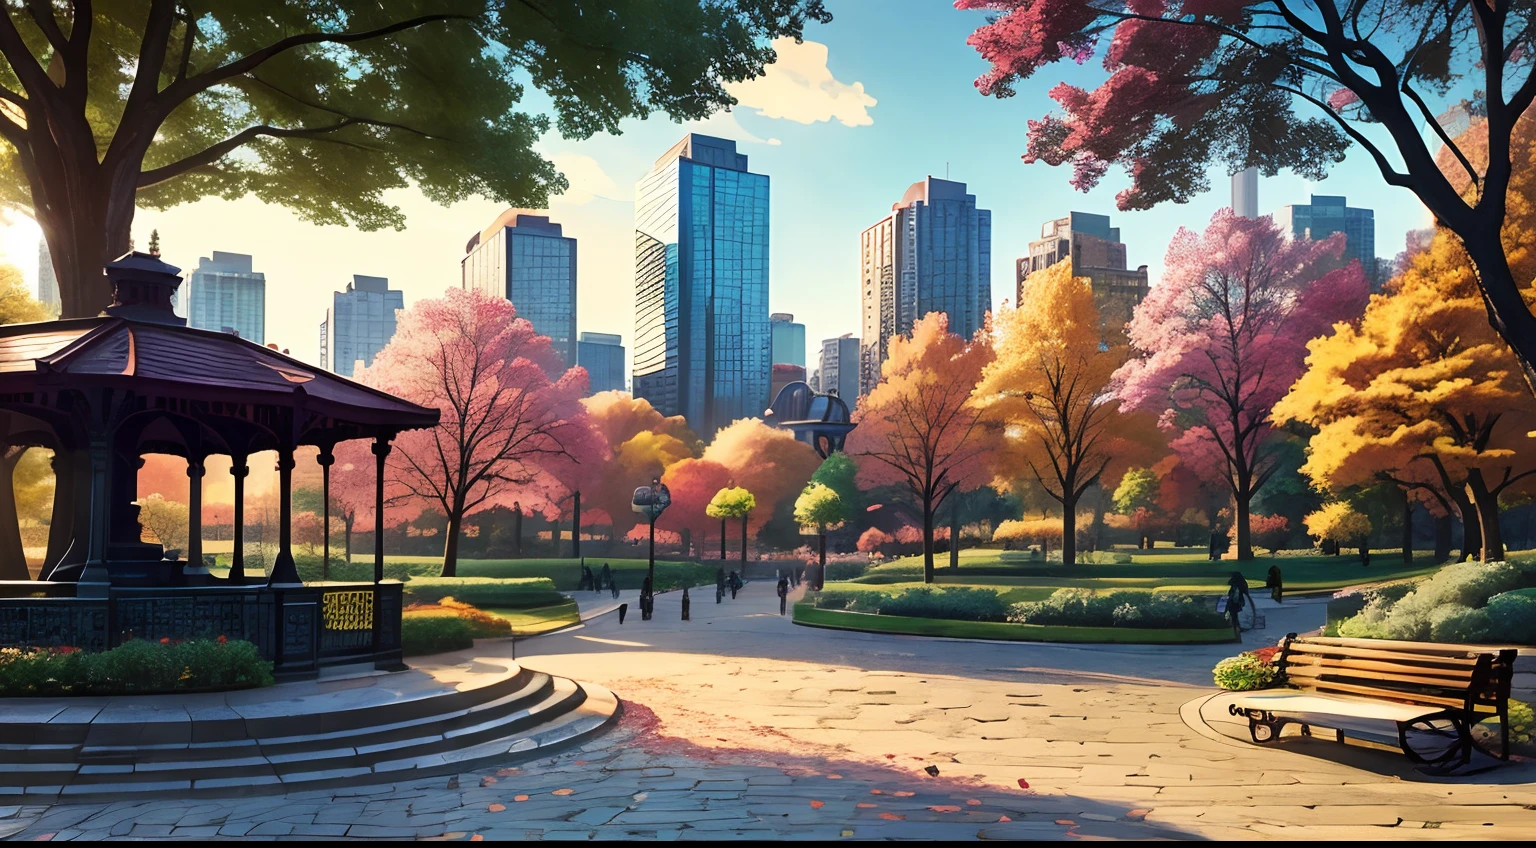 (최고의 품질:1.0), a vibrant park in the middle of a 밝은 cityscape, 나무, 벤치, 조각상 1개, 전망대 1개, 조약돌 길, 만화 스타일, 밝은